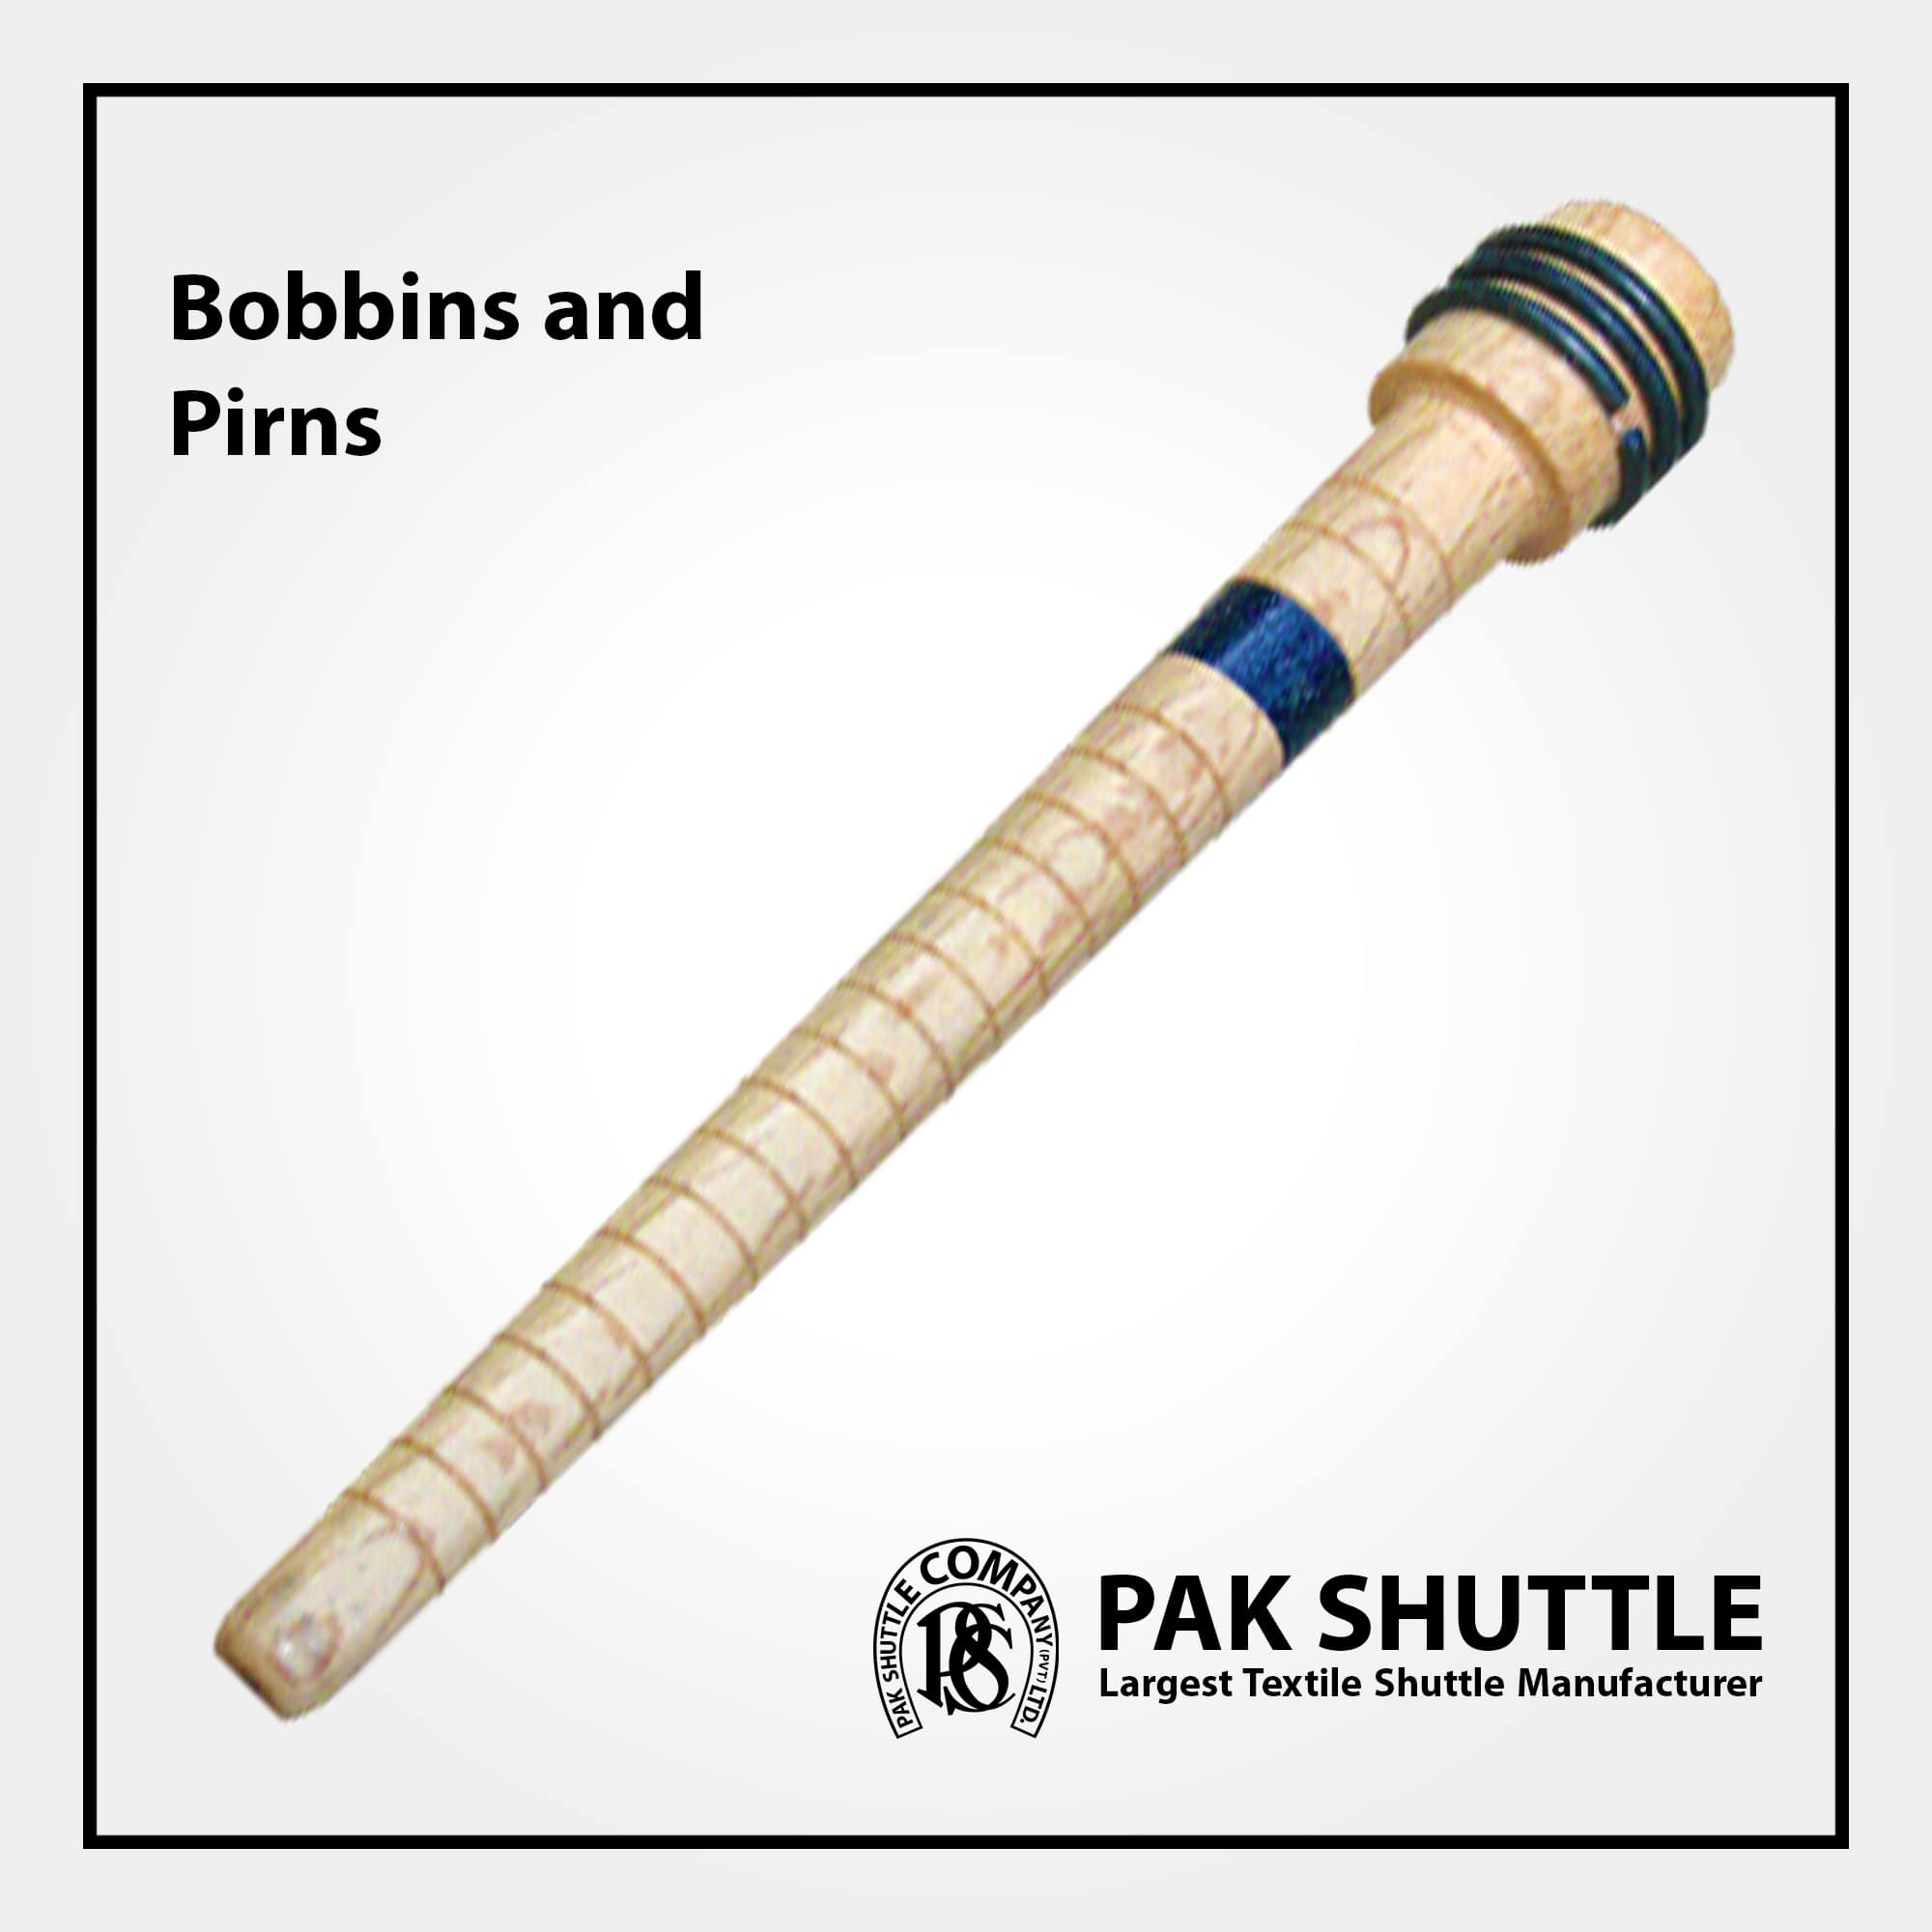 BOBBINS & PIRNS (For Various Shuttles) by Pak Shuttle Company Pvt Ltd.